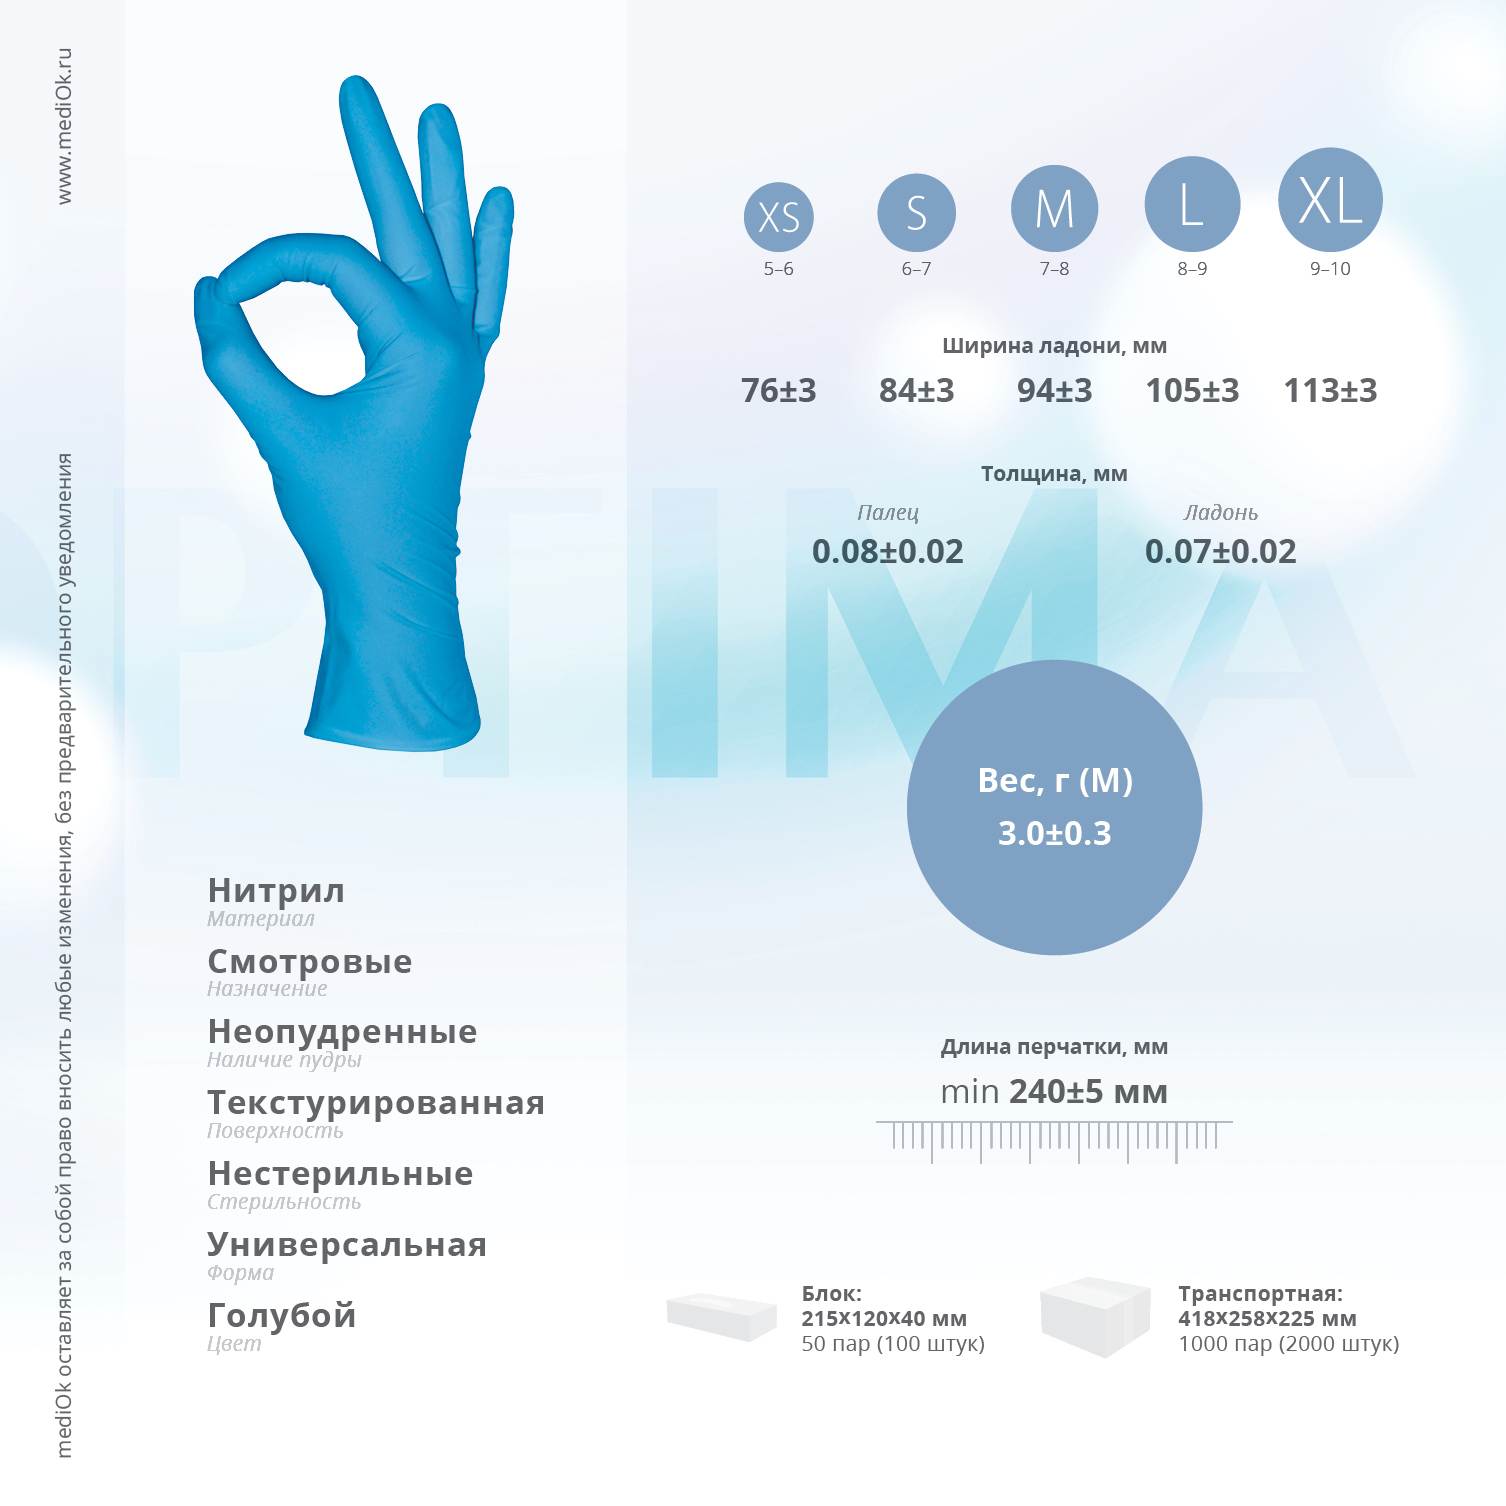 Нитриловые перчатки "MediOk Nitrile Optima", смотровые, голубые